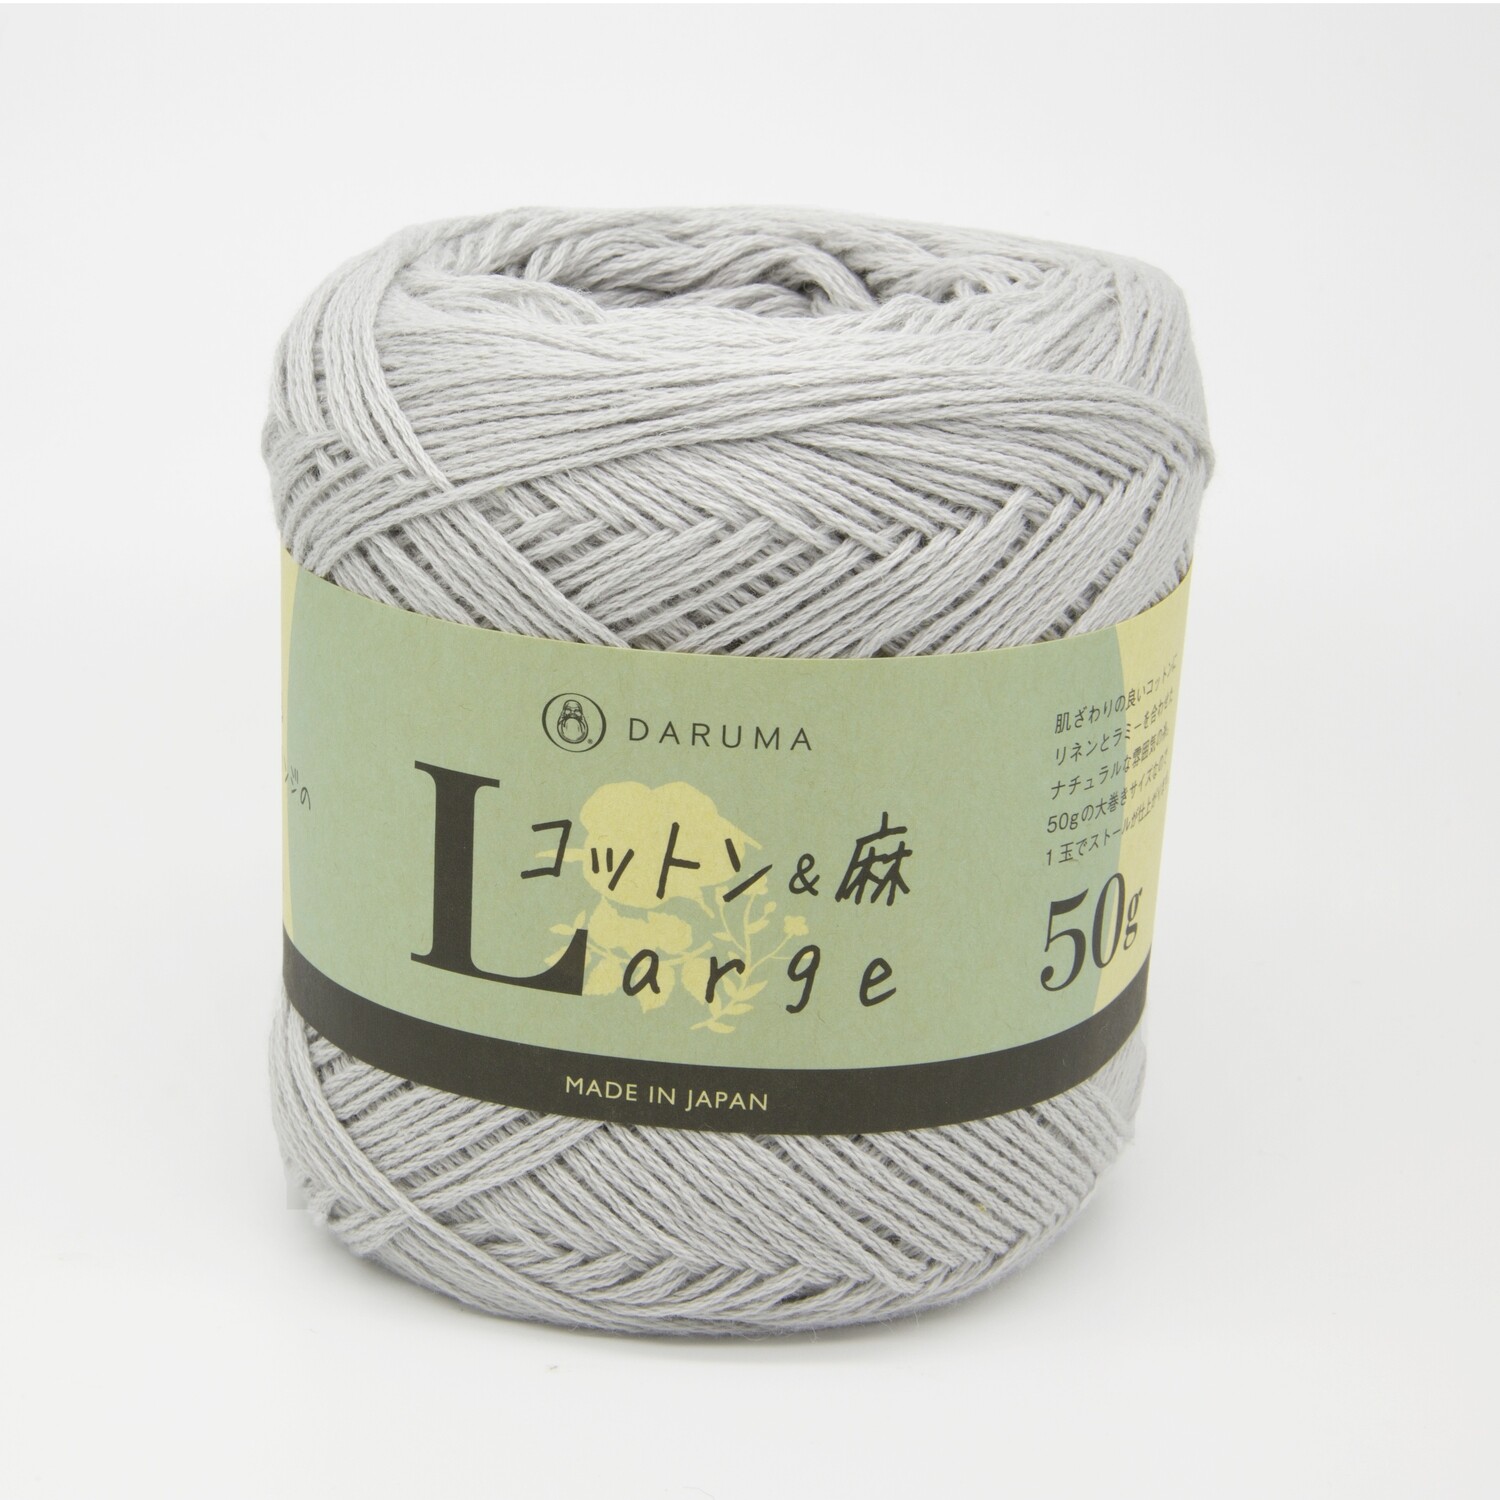 cotton & linen large серый (6)